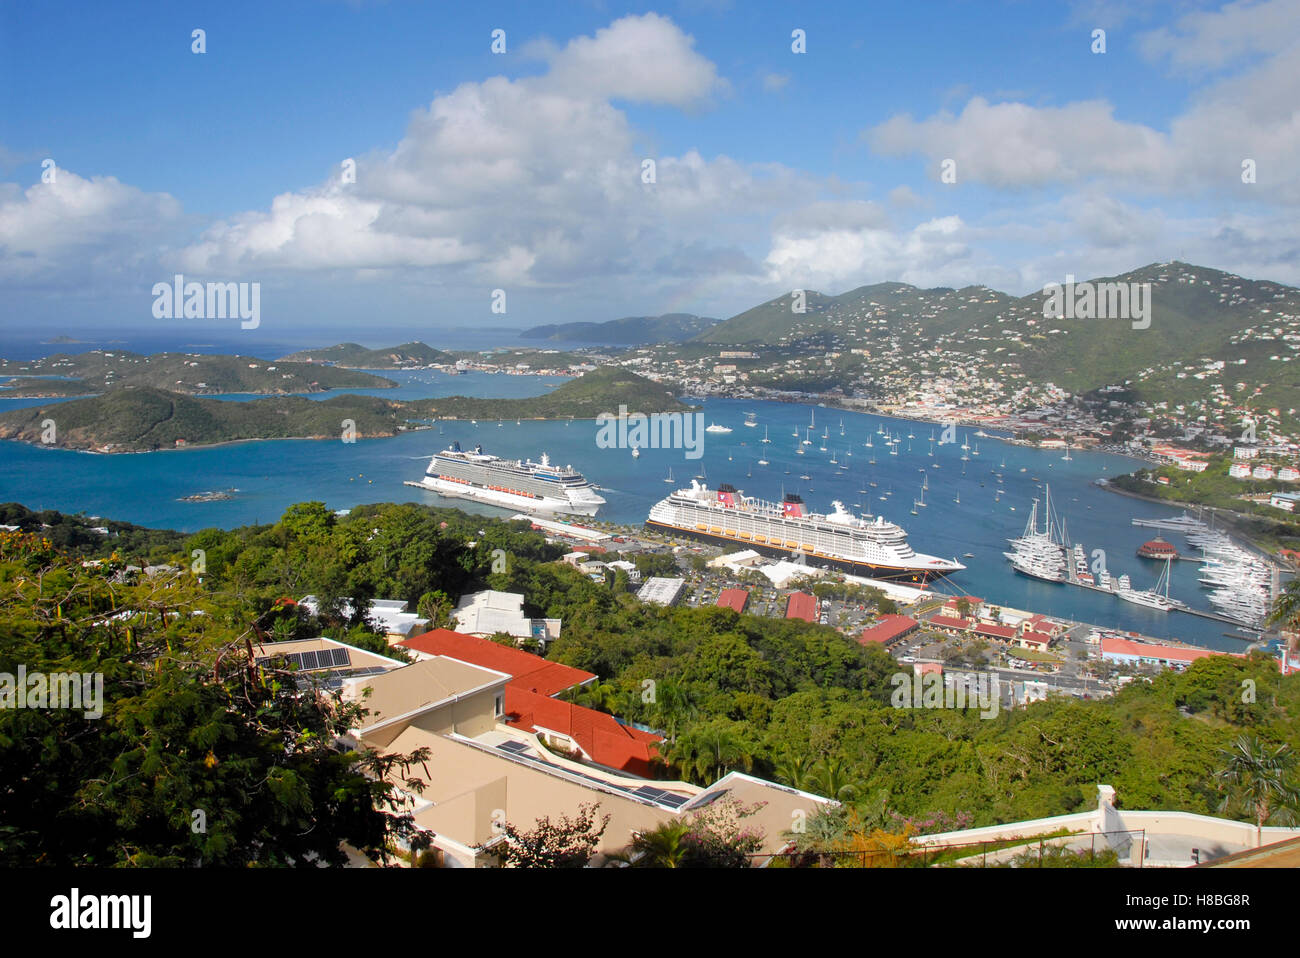 Schiffe und Boote im Hafen, von Paradise Point, St Thomas, Karibik gesehen Stockfoto